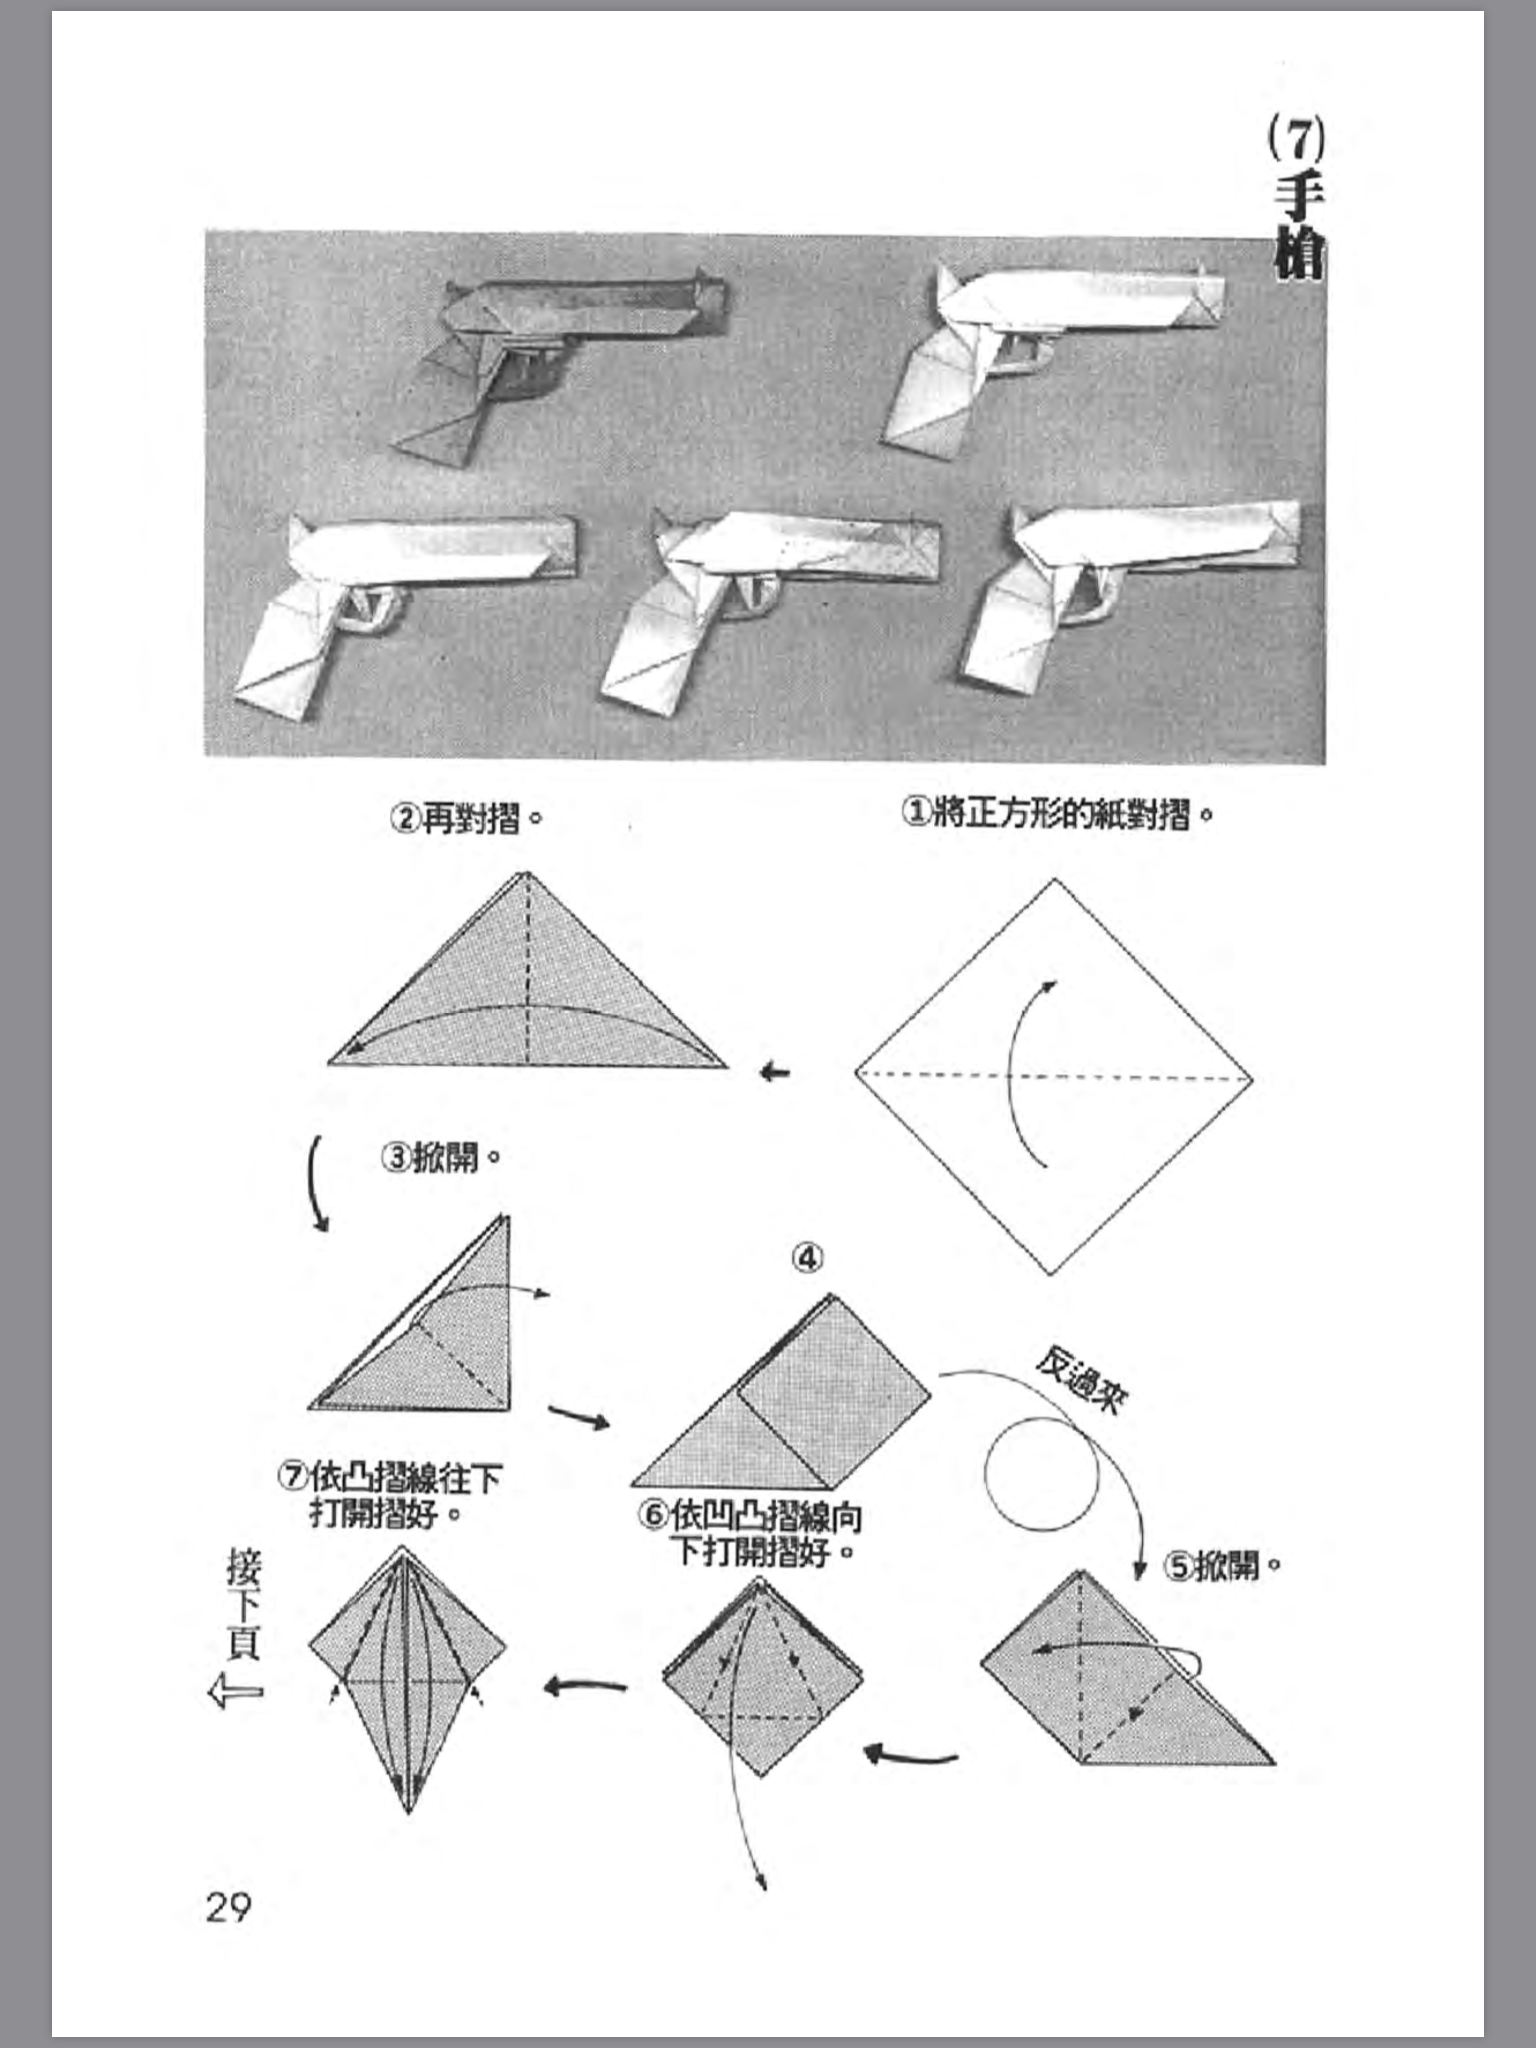 折纸战士之折纸宝典1分享4手枪协和式飞机